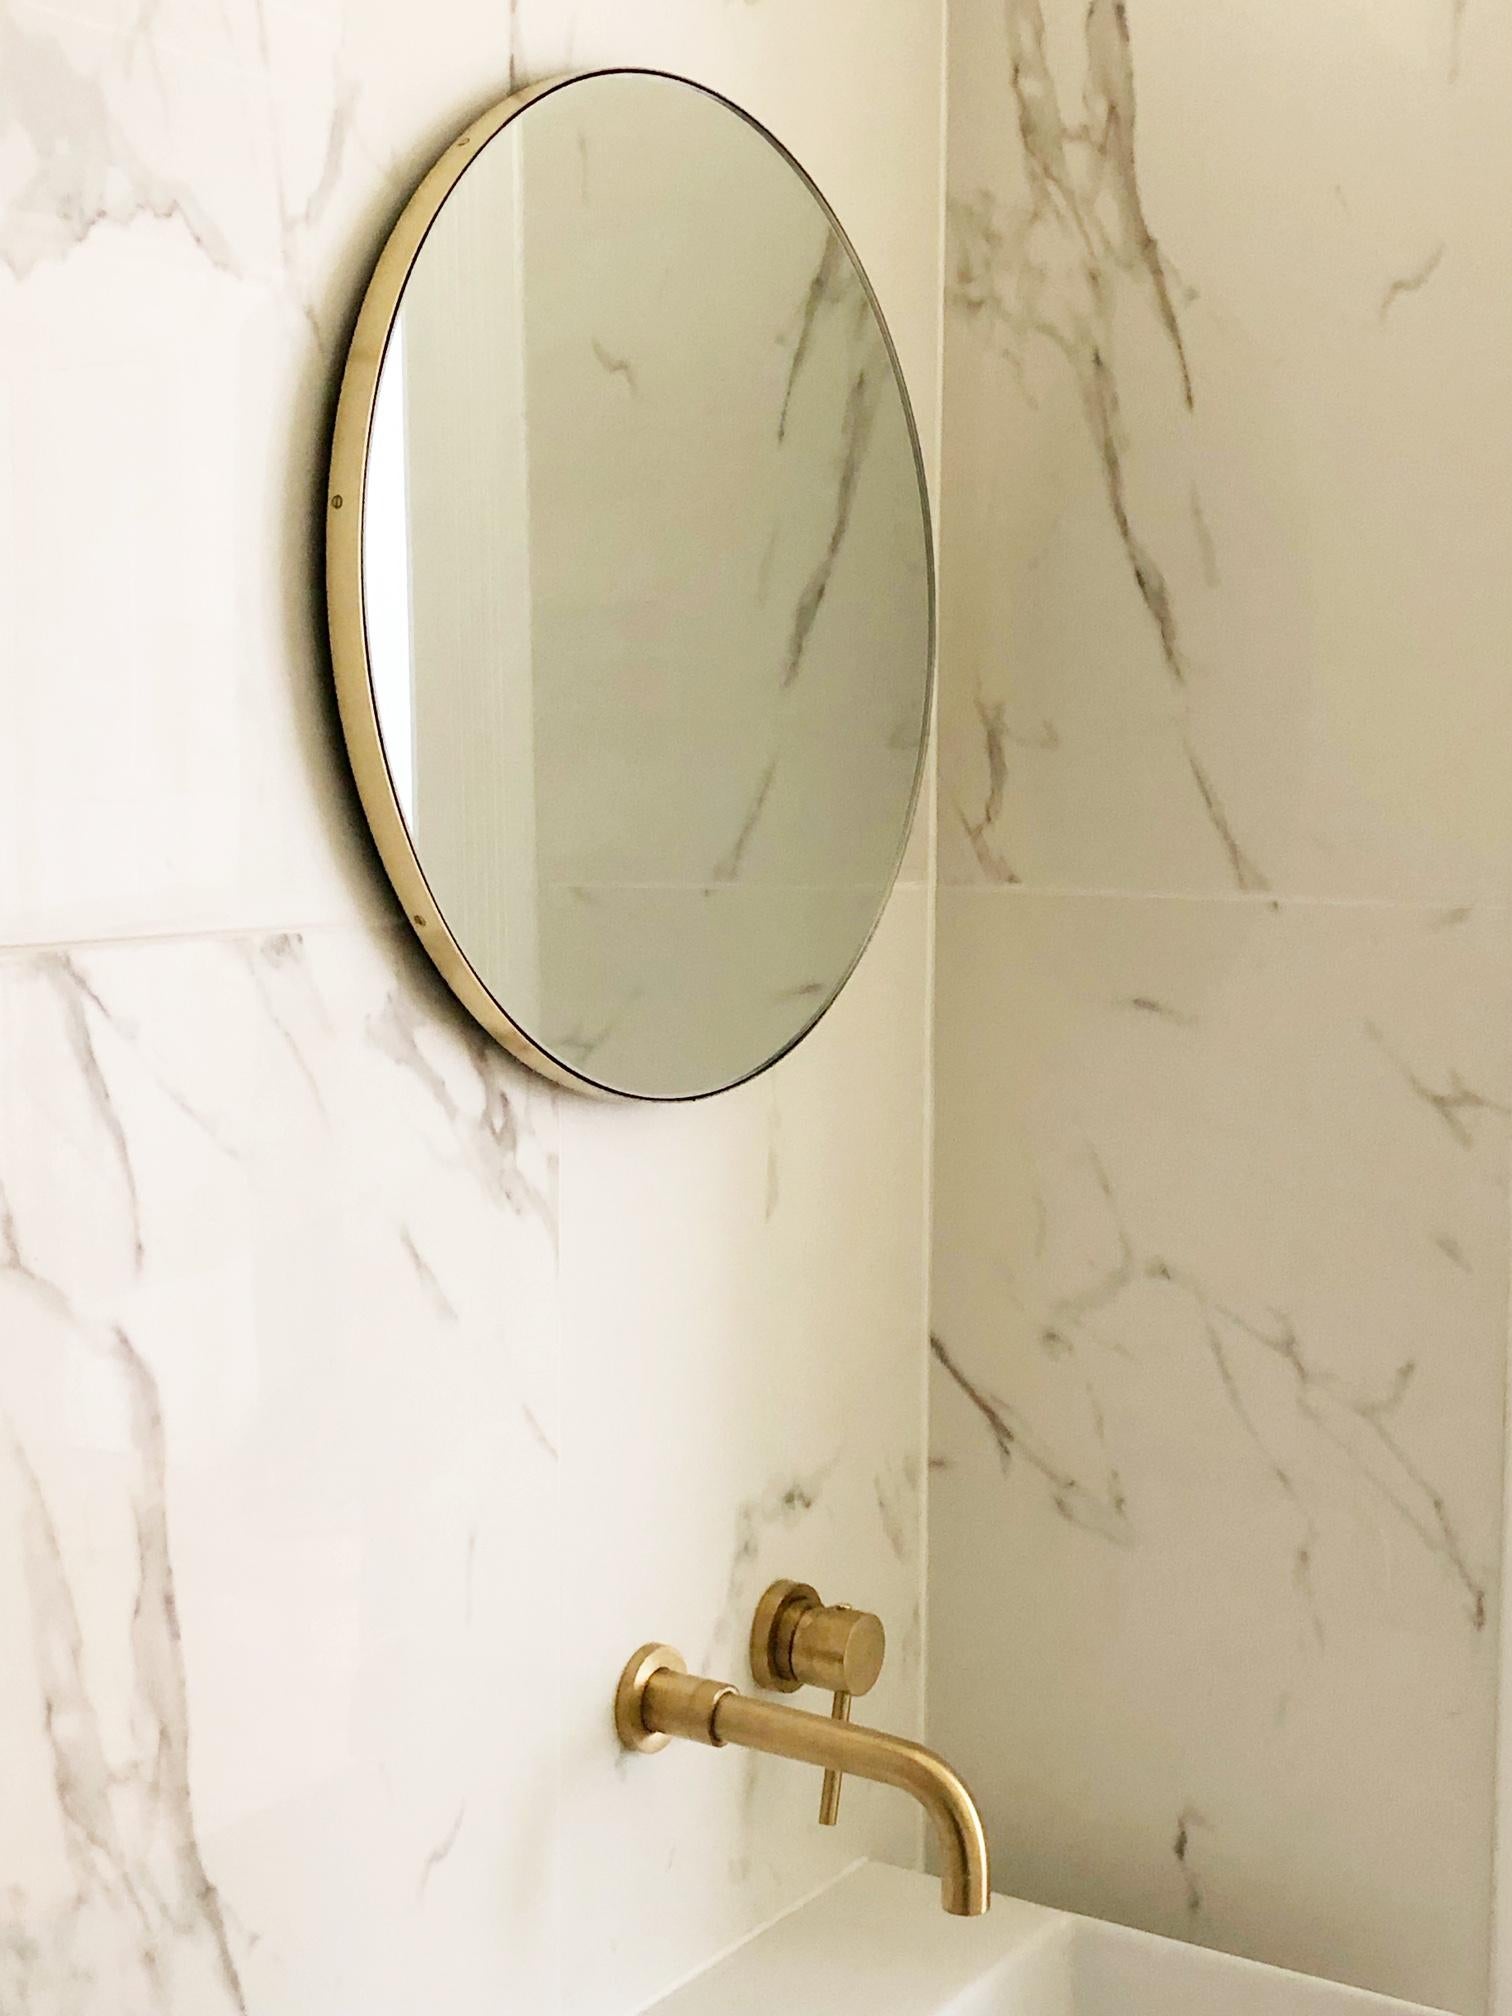 Miroir rond minimaliste Orbis™ doté d'un élégant cadre en laiton massif brossé. Les détails et la finition, y compris les vis en laiton visibles, soulignent l'aspect artisanal et la qualité du miroir, véritable signature de notre marque. Conçu et